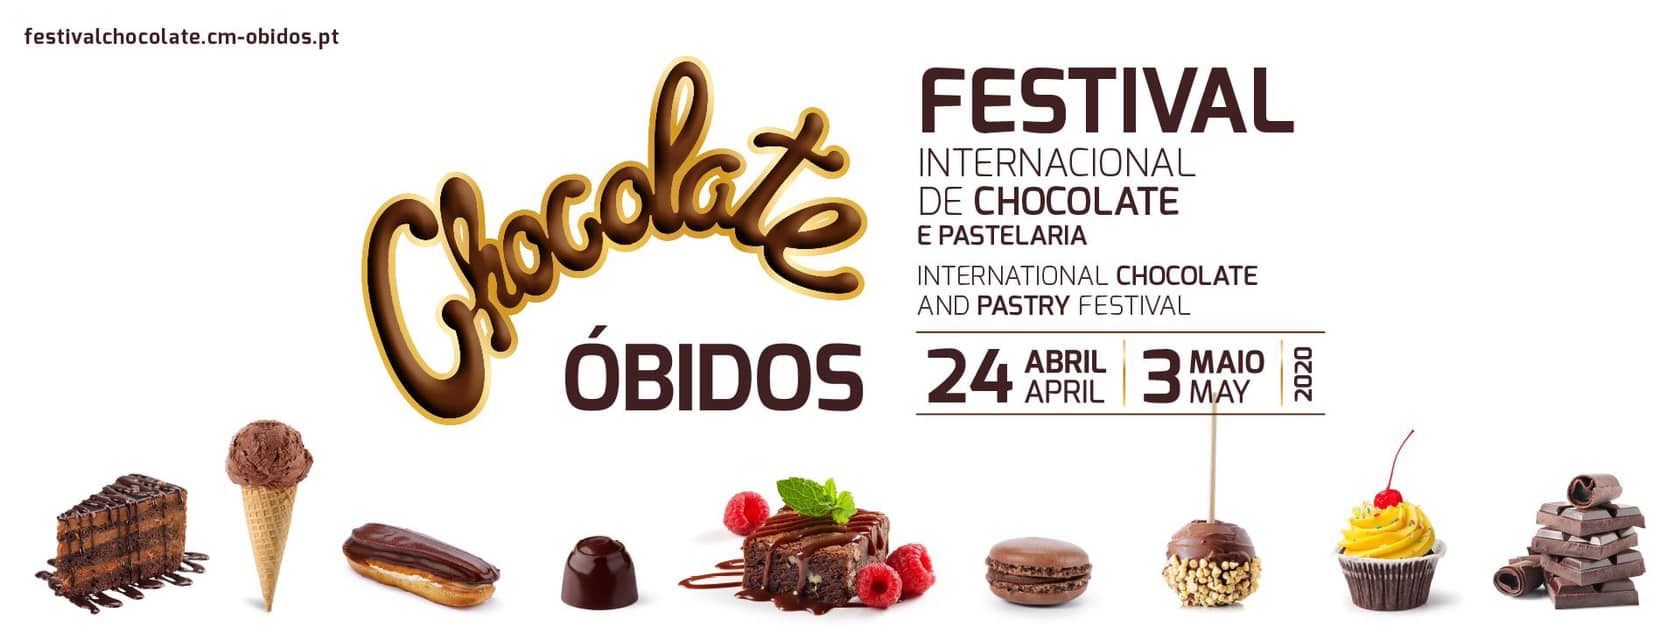 Festival do Chocolate em Óbidos